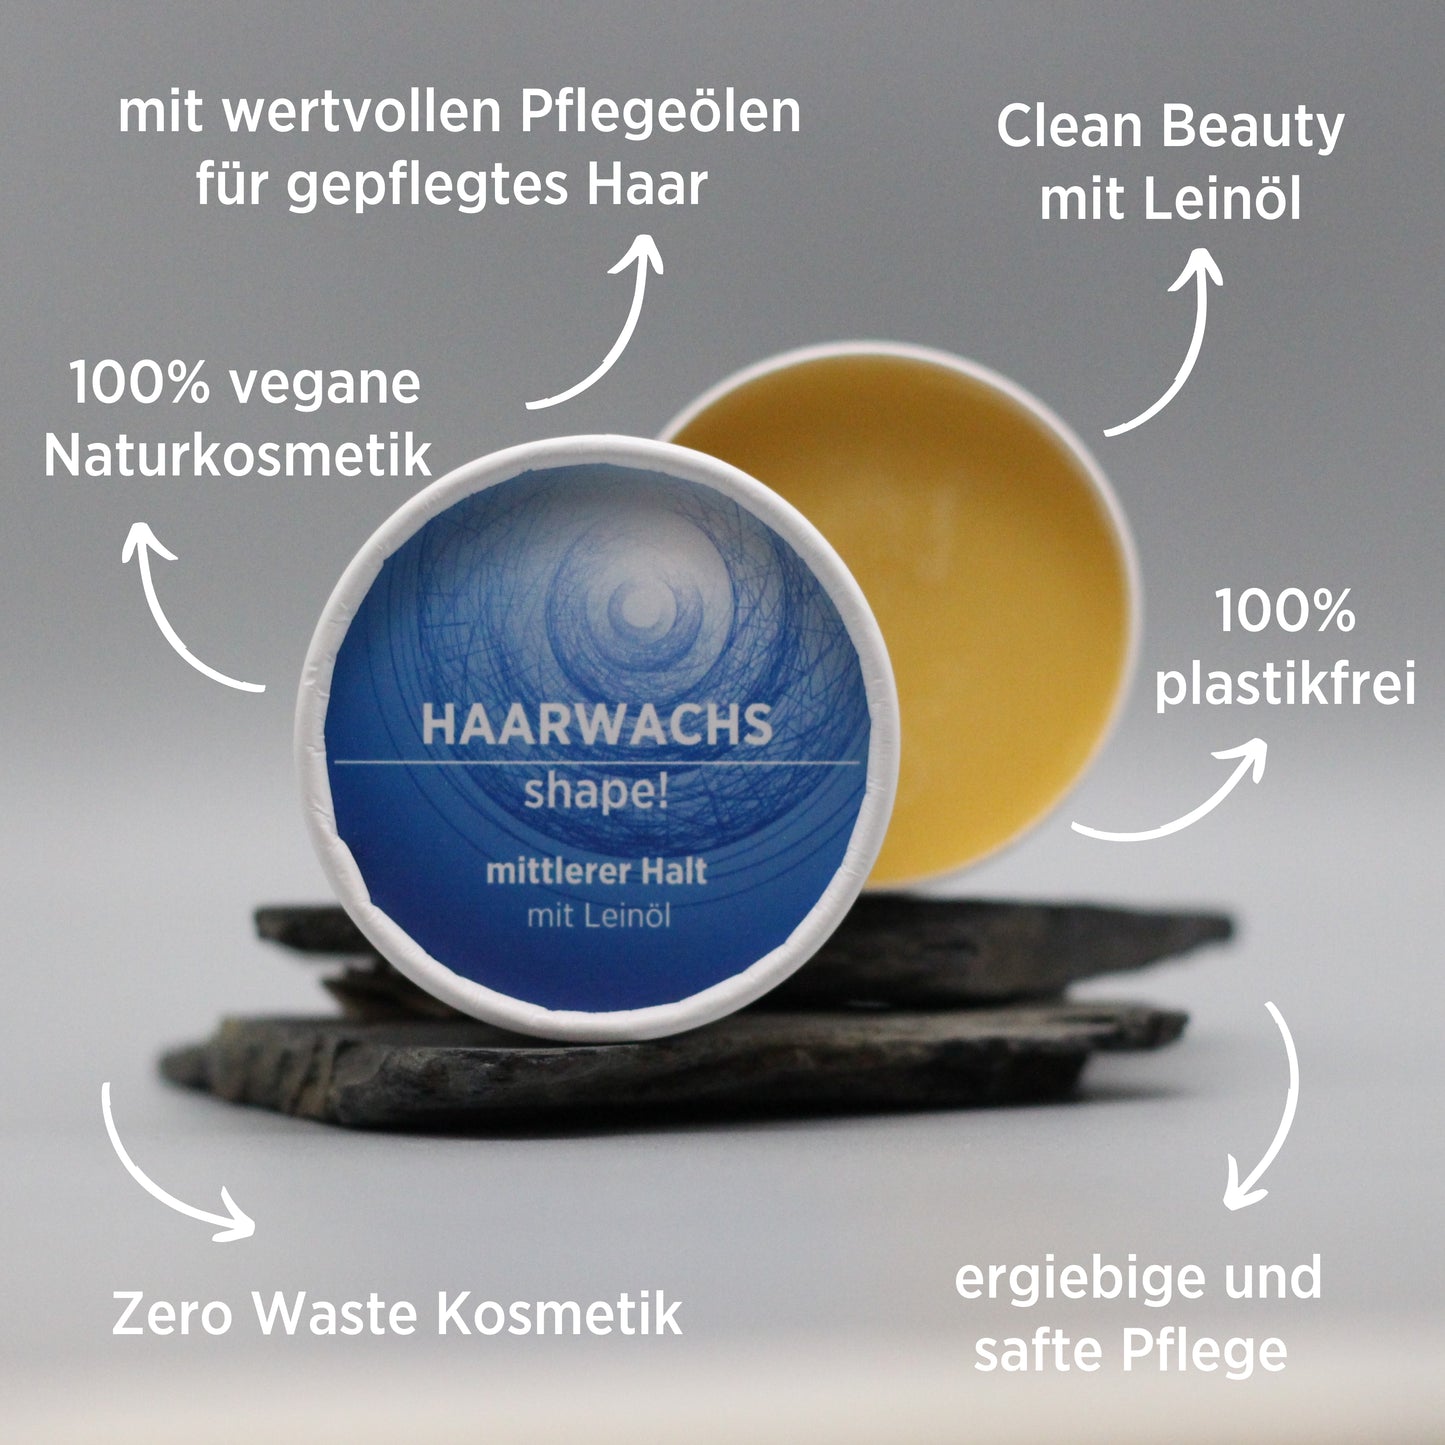 Haarwachs mit natürlichen Inhaltsstoffen für mittleren Halt mit Leinöl, Gesichtsbalsam ist in weißem, zylindrischem Karton verpackt mit blauem Etikett, zudem sind detaillierte Produktinformationen am Bild zu lesen